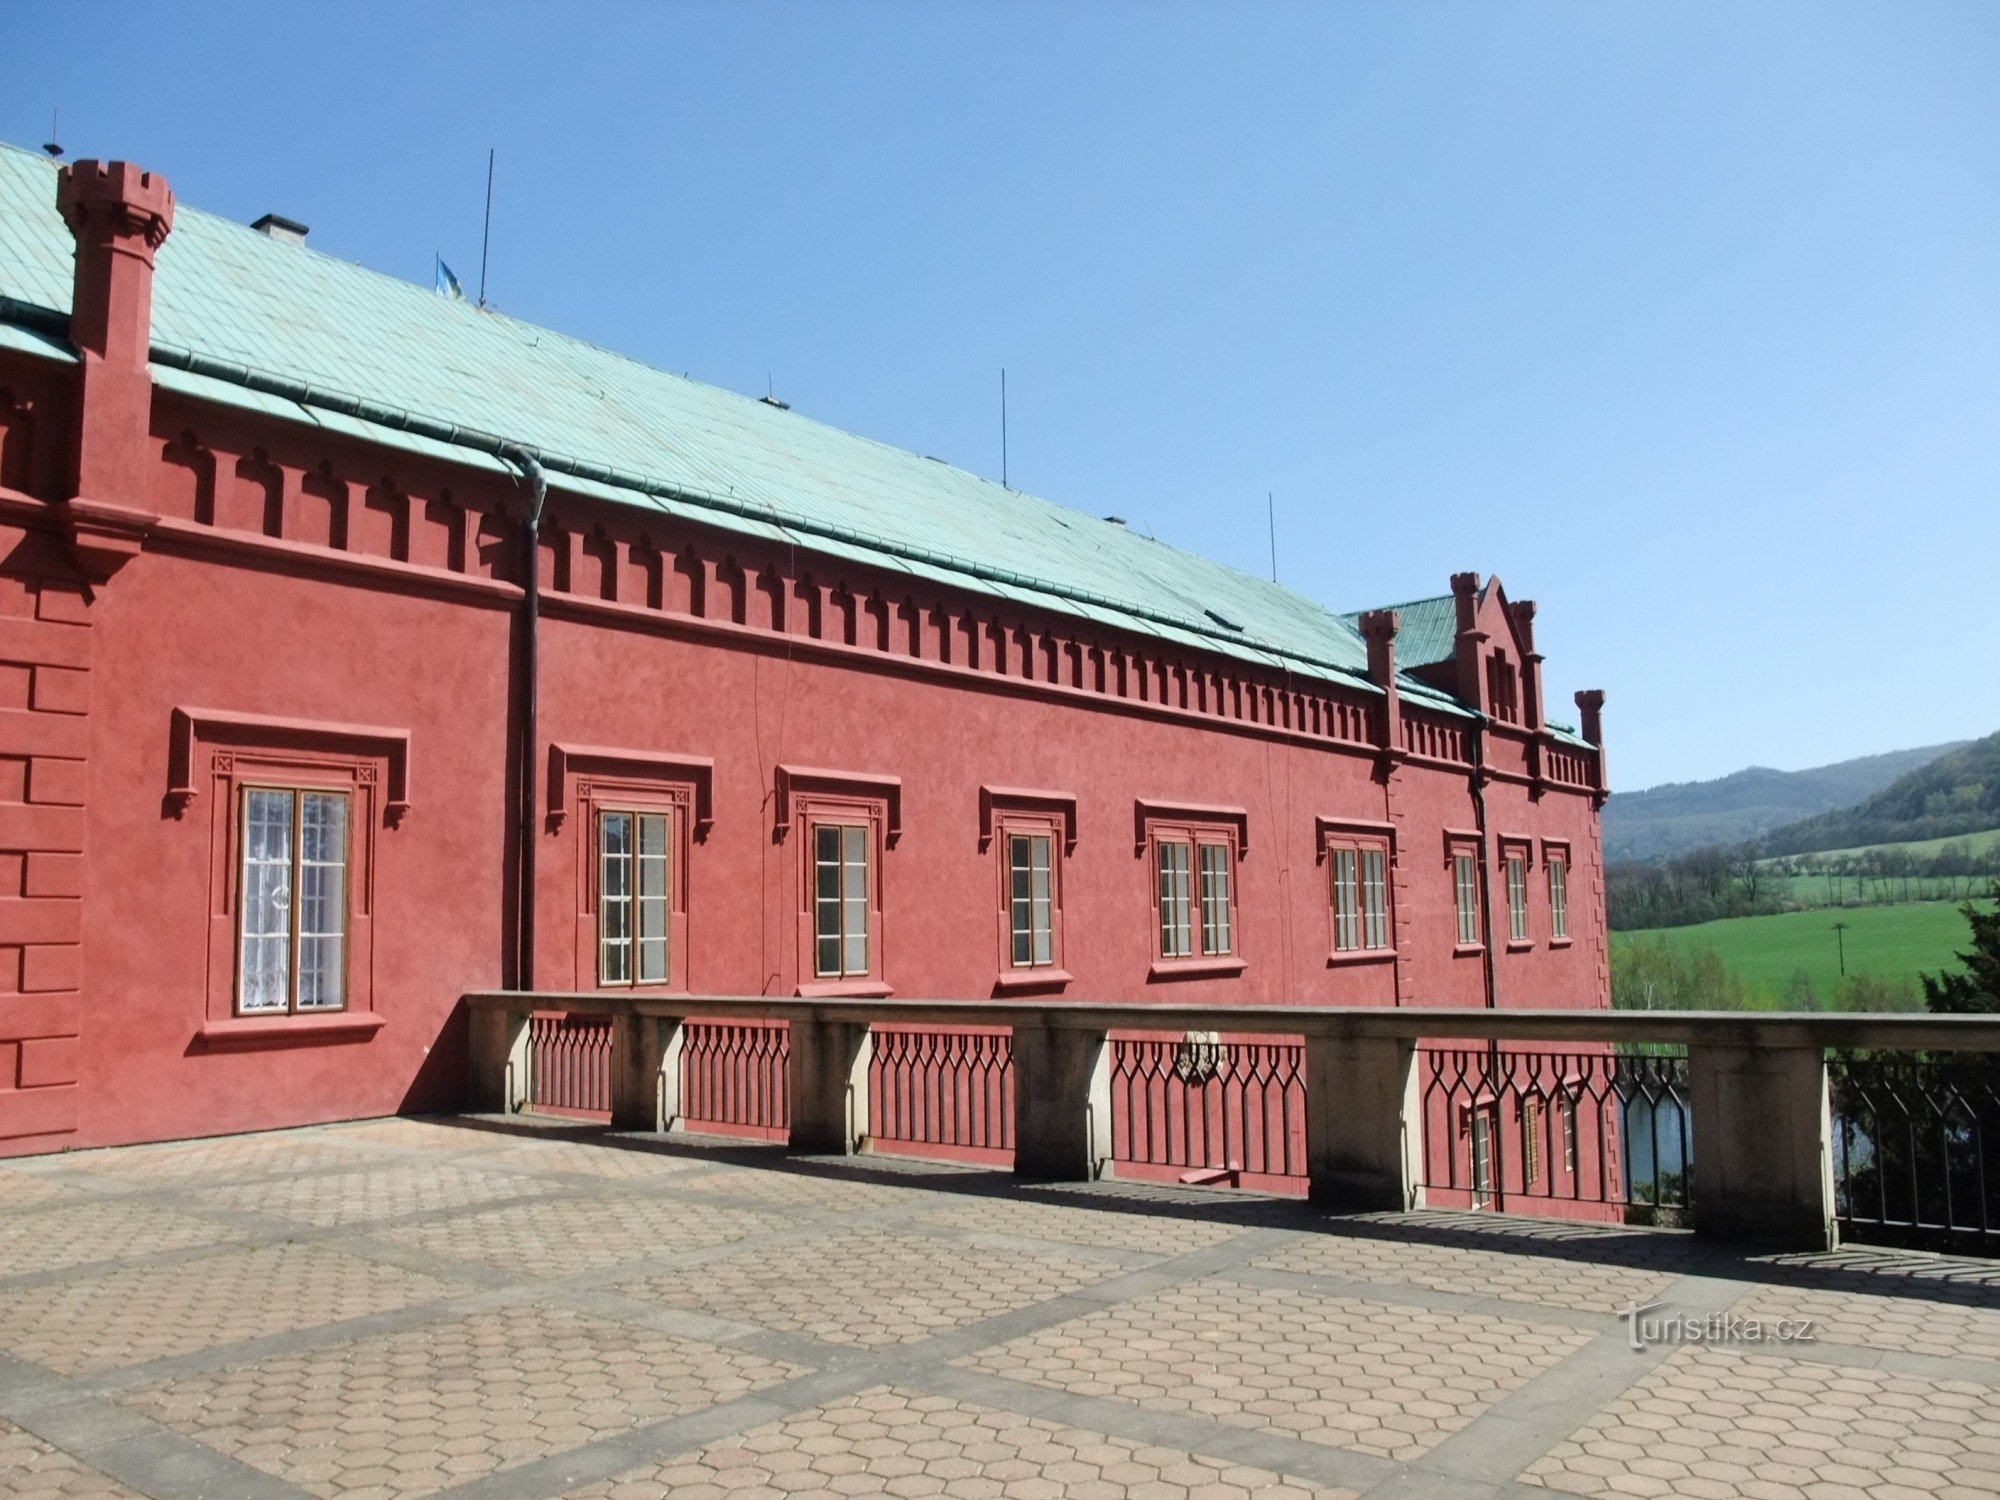 Château de Klášterec nad Ohří - musée de la porcelaine